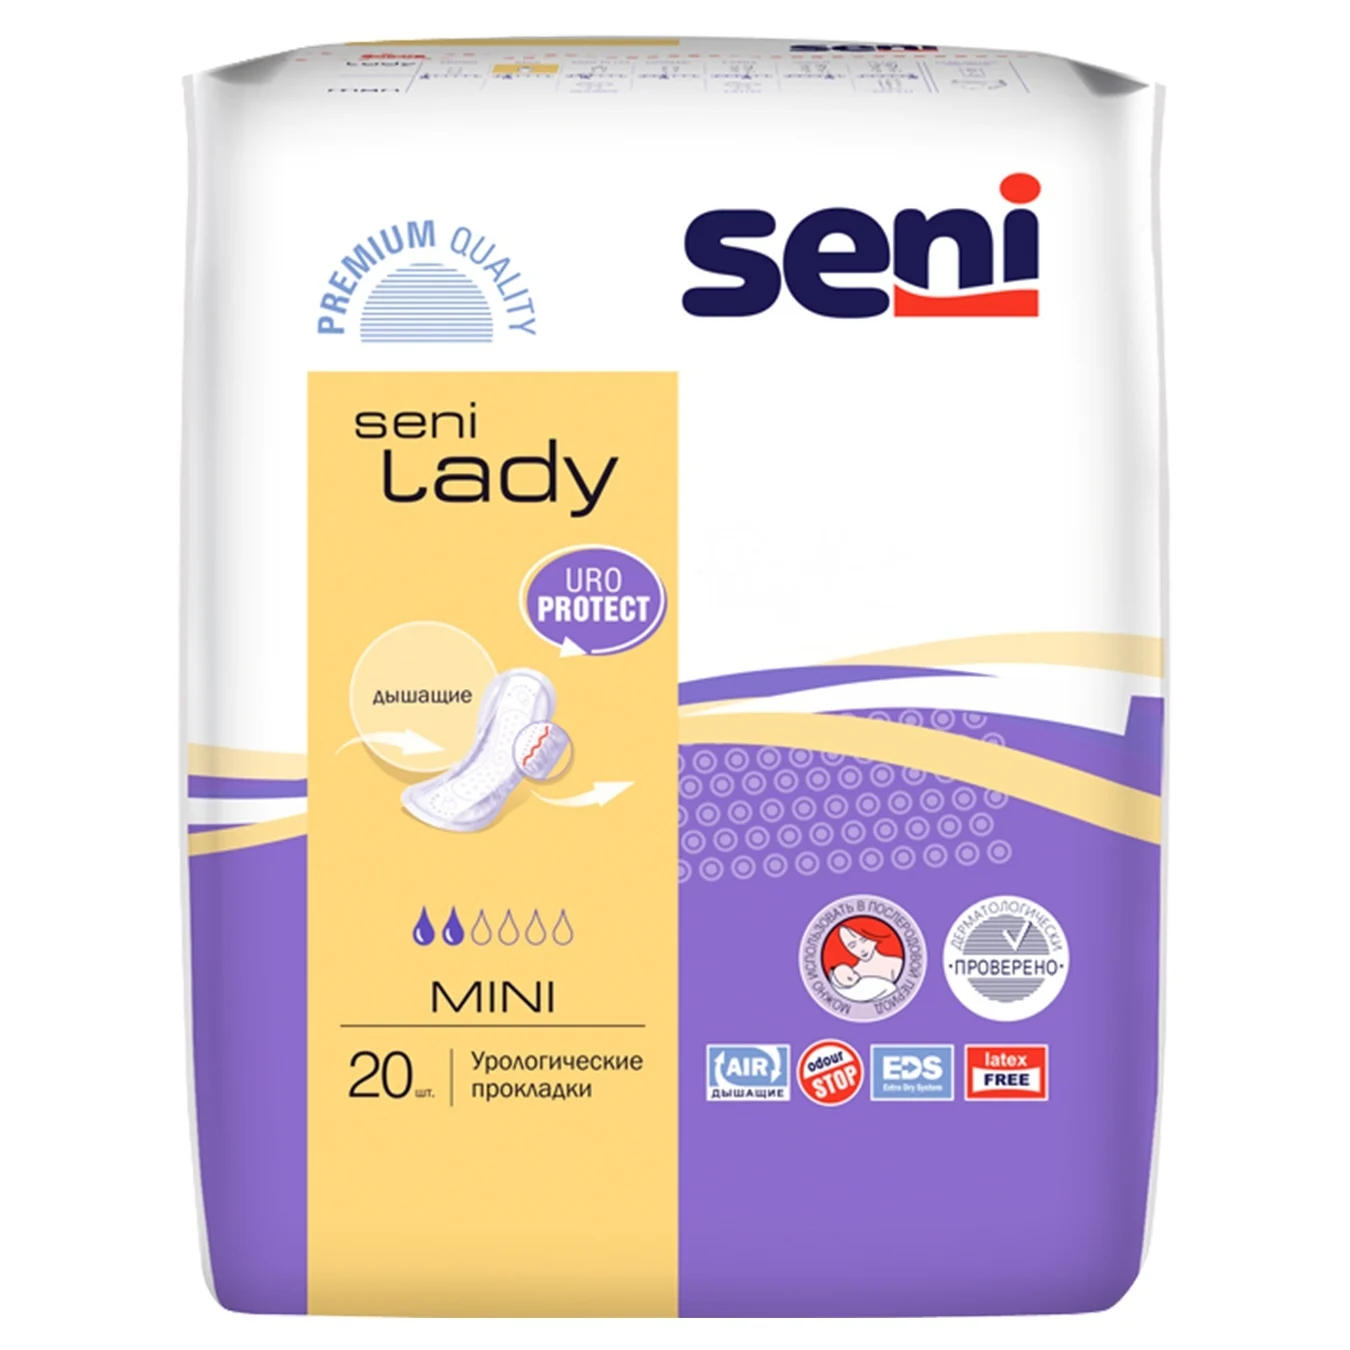 Urological pads Seni Lady mini 20 pcs